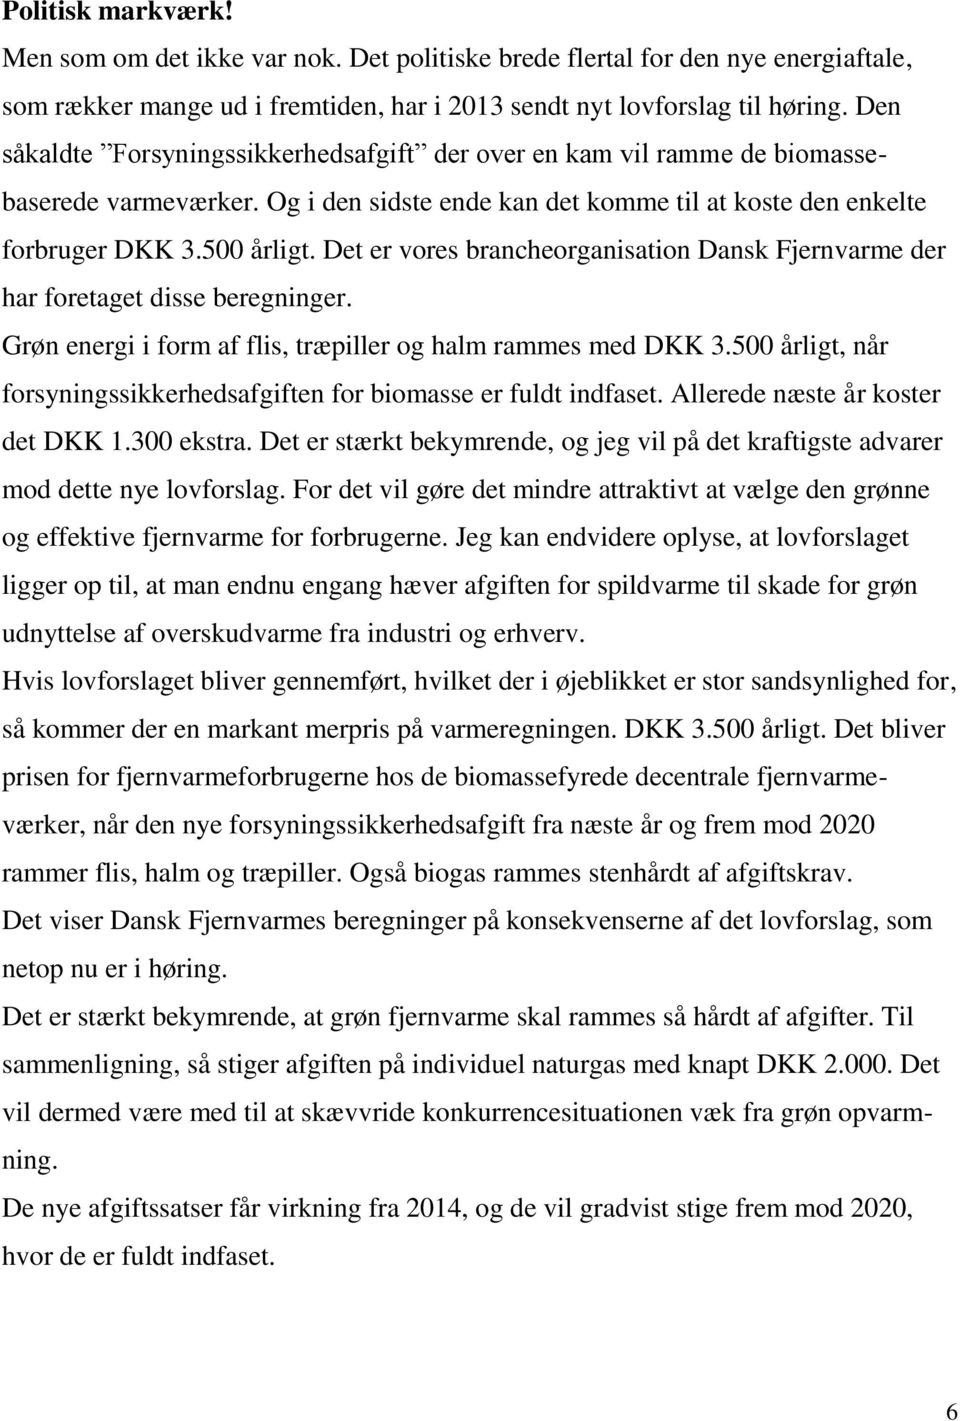 Det er vores brancheorganisation Dansk Fjernvarme der har foretaget disse beregninger. Grøn energi i form af flis, træpiller og halm rammes med DKK 3.